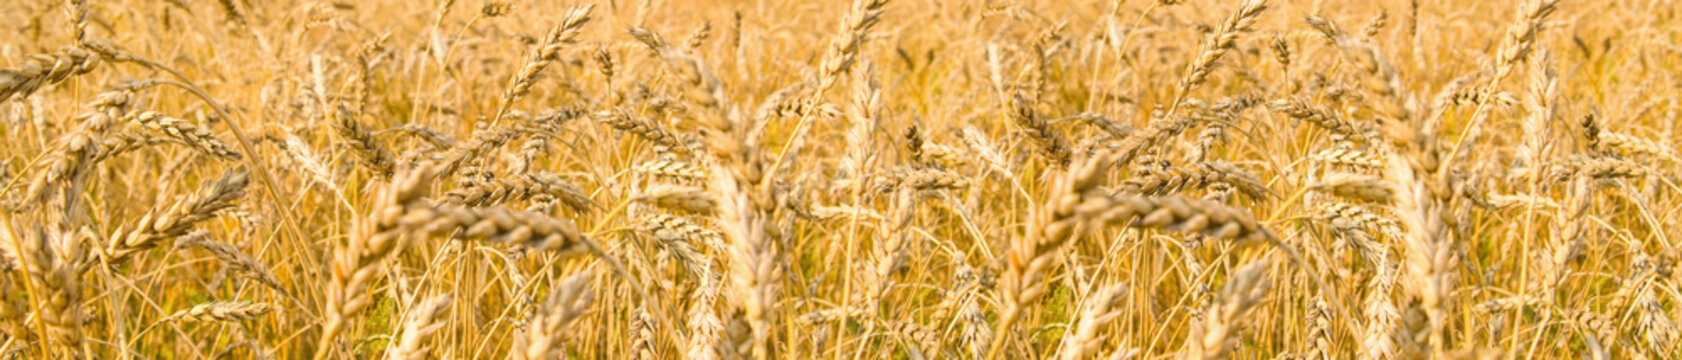 wheaten field ripened ears © tankist276